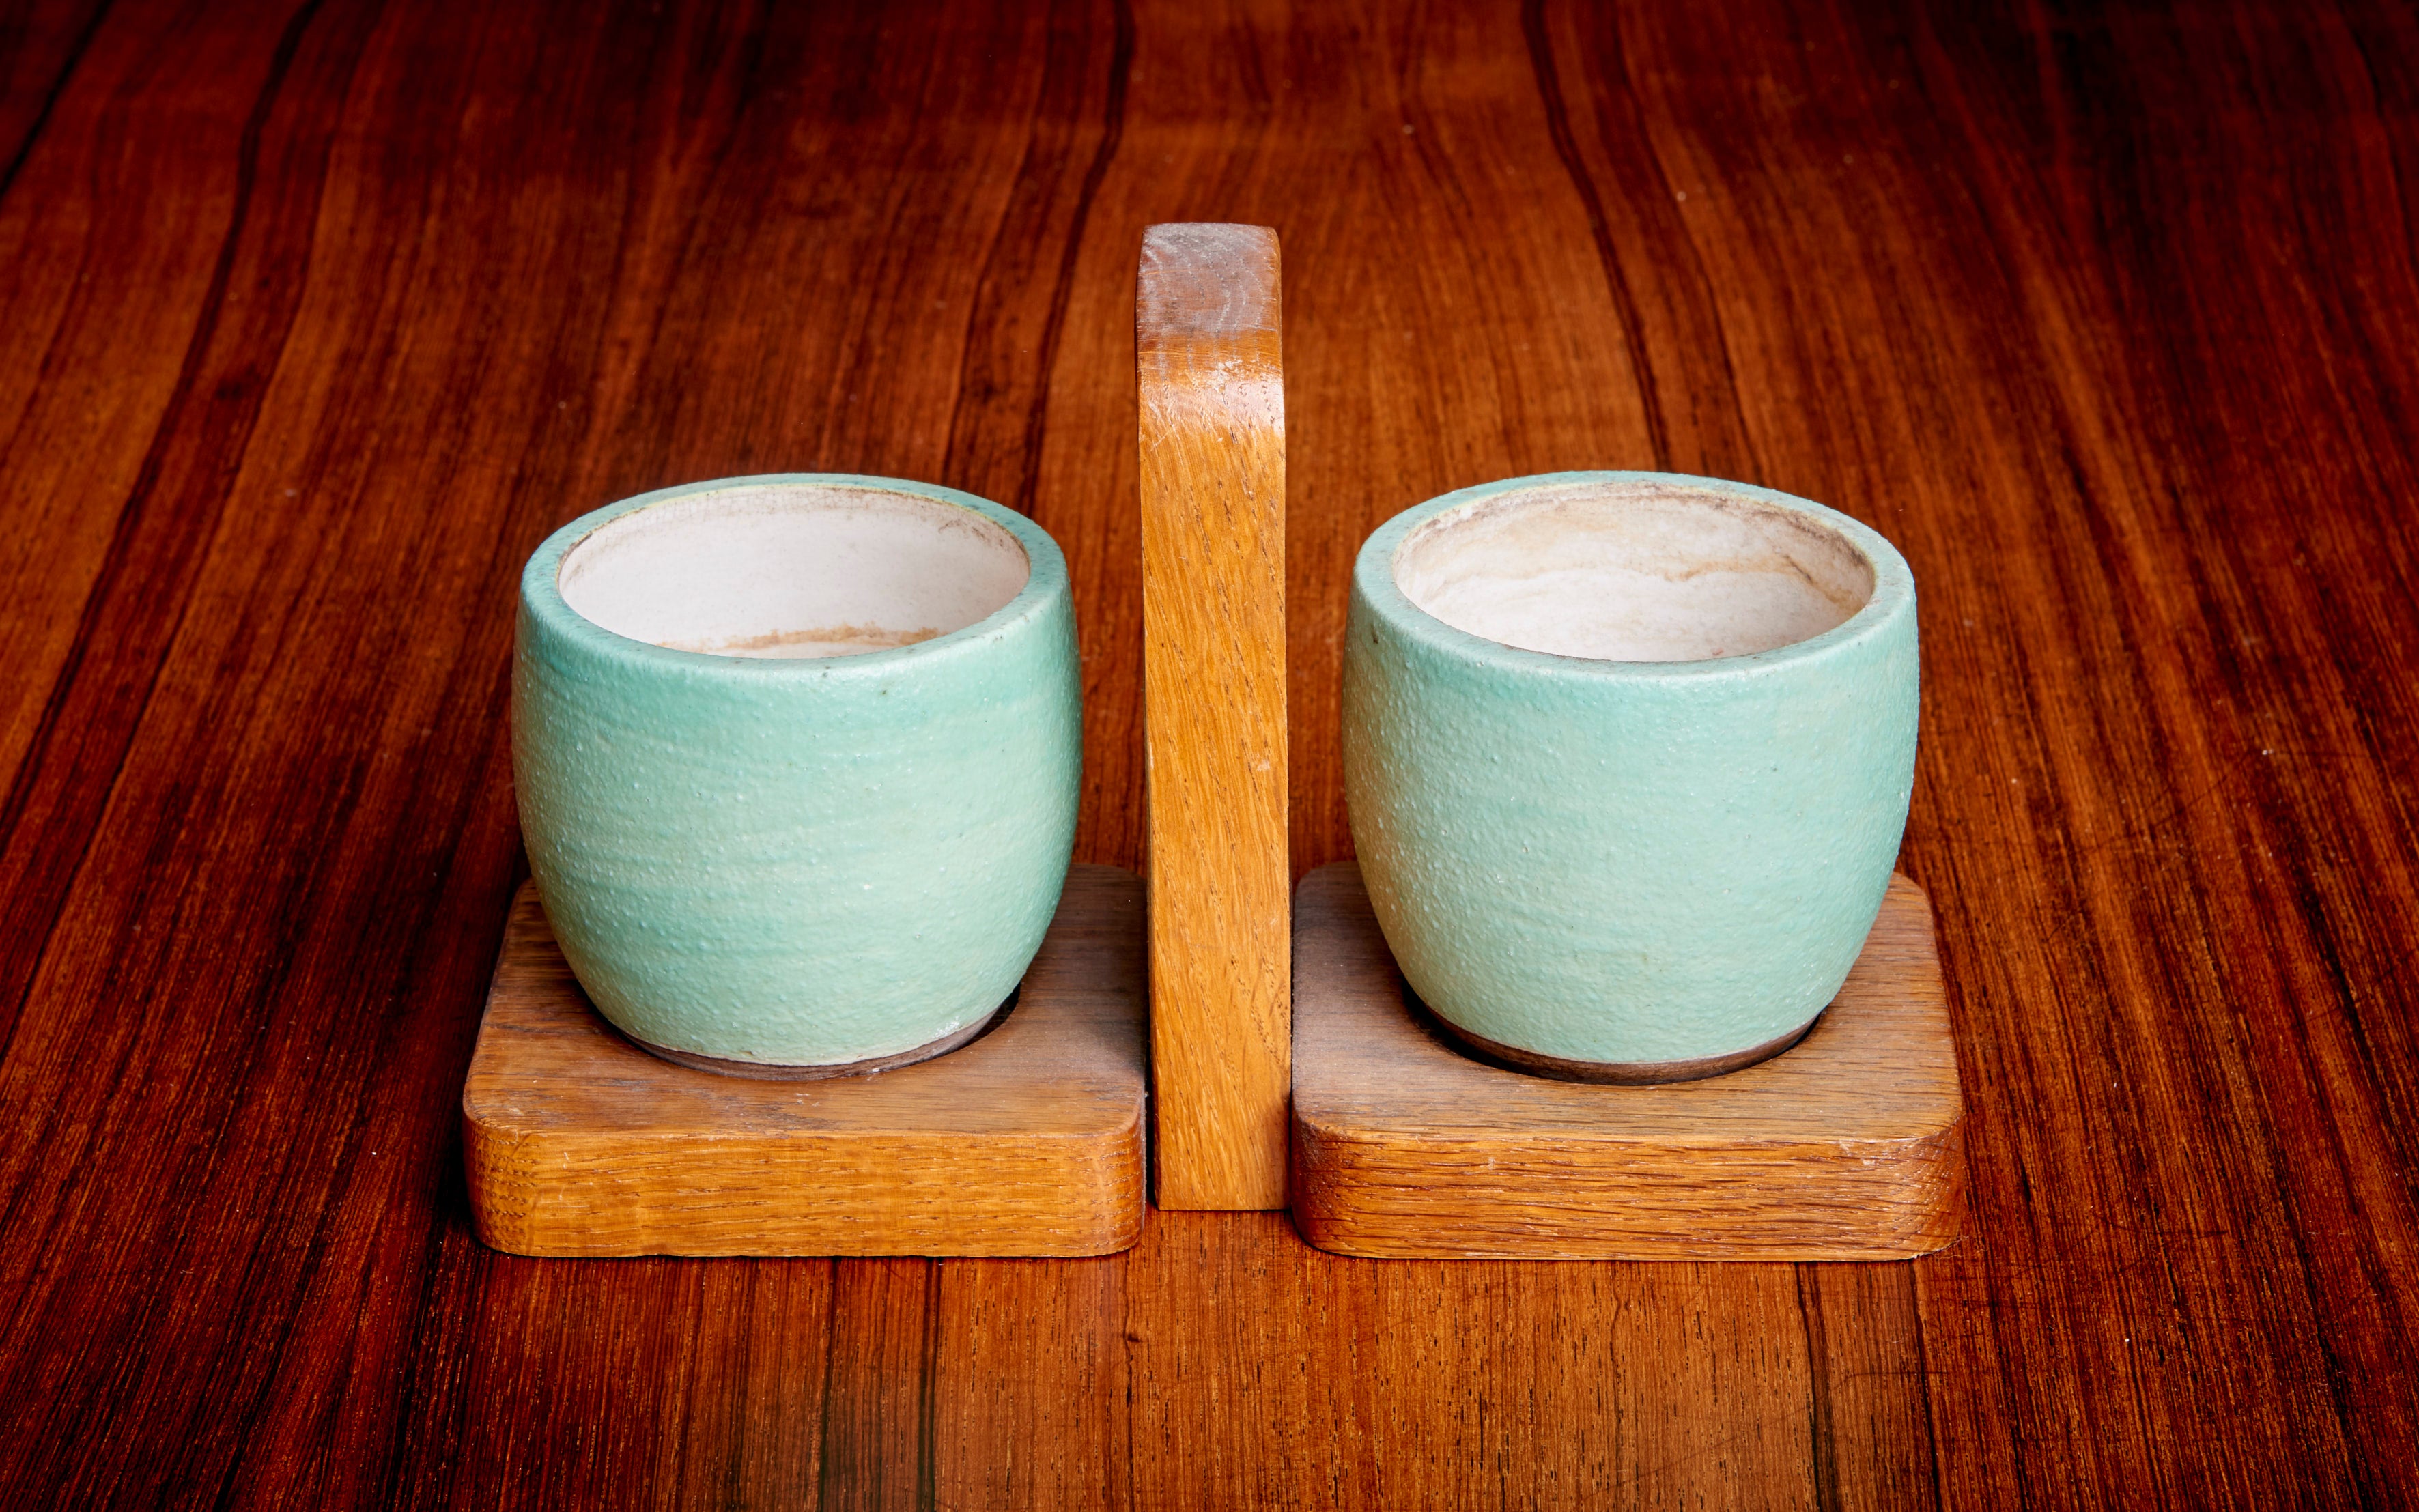 Sehr hübsches Set aus zwei grün/braunen Keramos-Keramikbechern und Eichenholz-Tablett in gutem Zustand.

